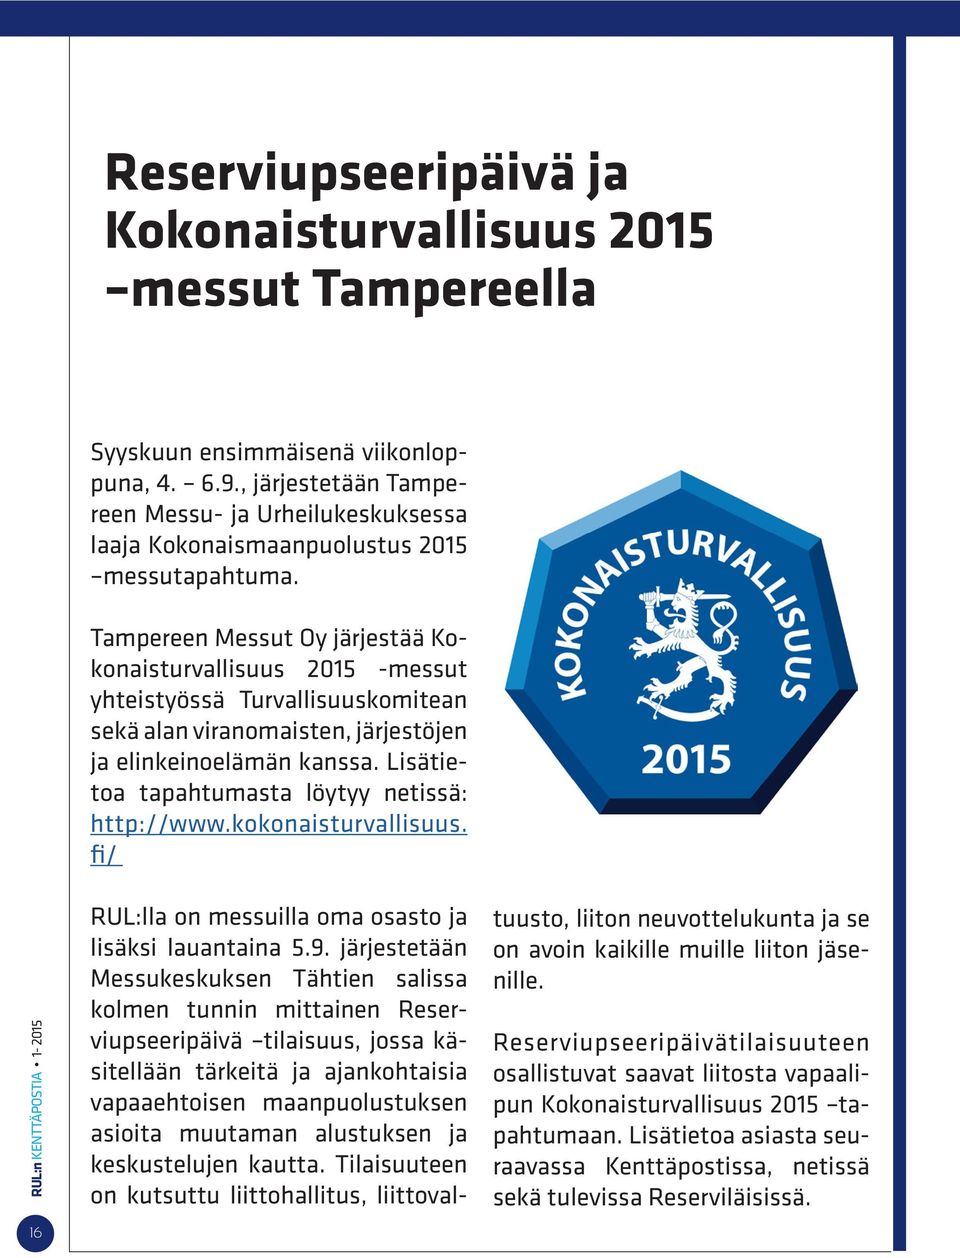 Tampereen Messut Oy järjestää Kokonaisturvallisuus 2015 -messut yhteistyössä Turvallisuuskomitean sekä alan viranomaisten, järjestöjen ja elinkeinoelämän kanssa.